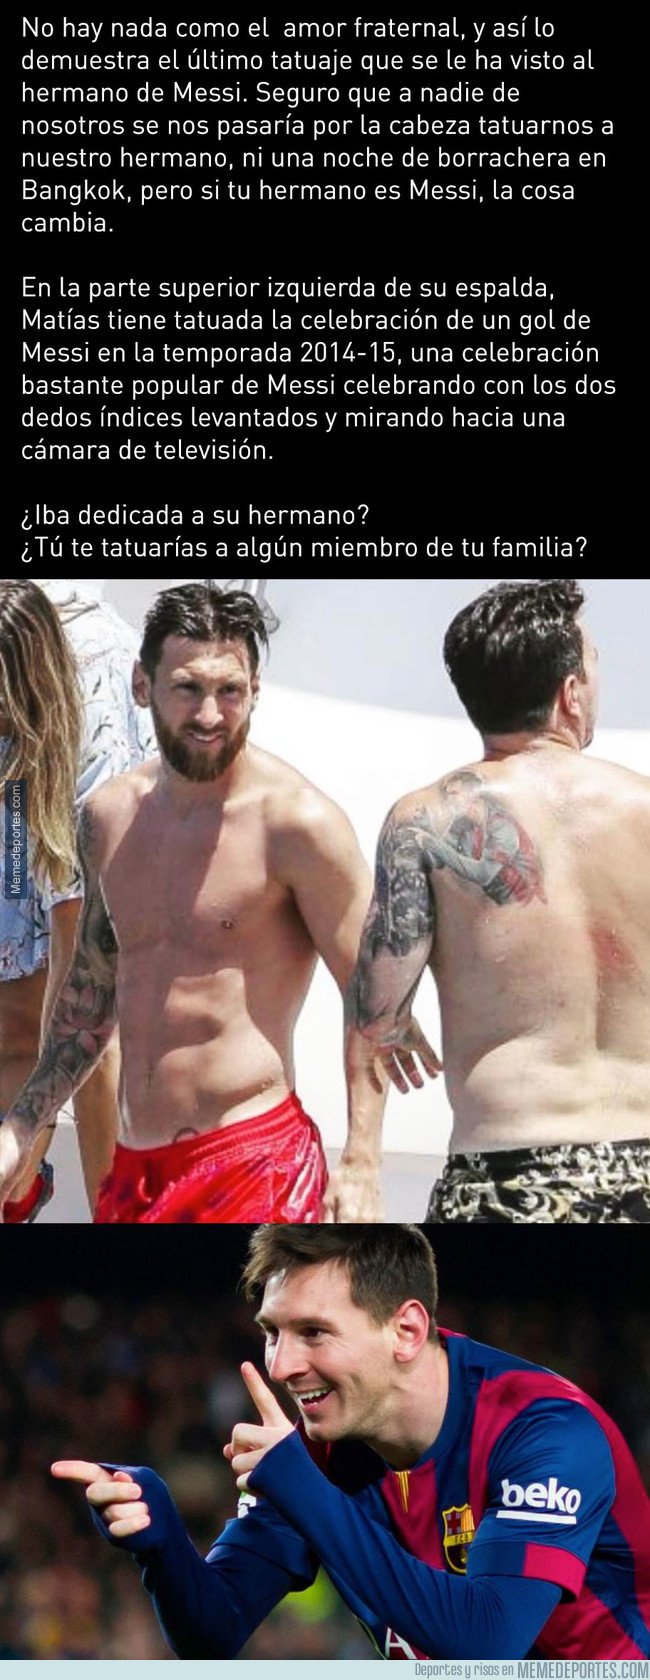 1045804 - El nuevo tatuaje del hermano de Messi